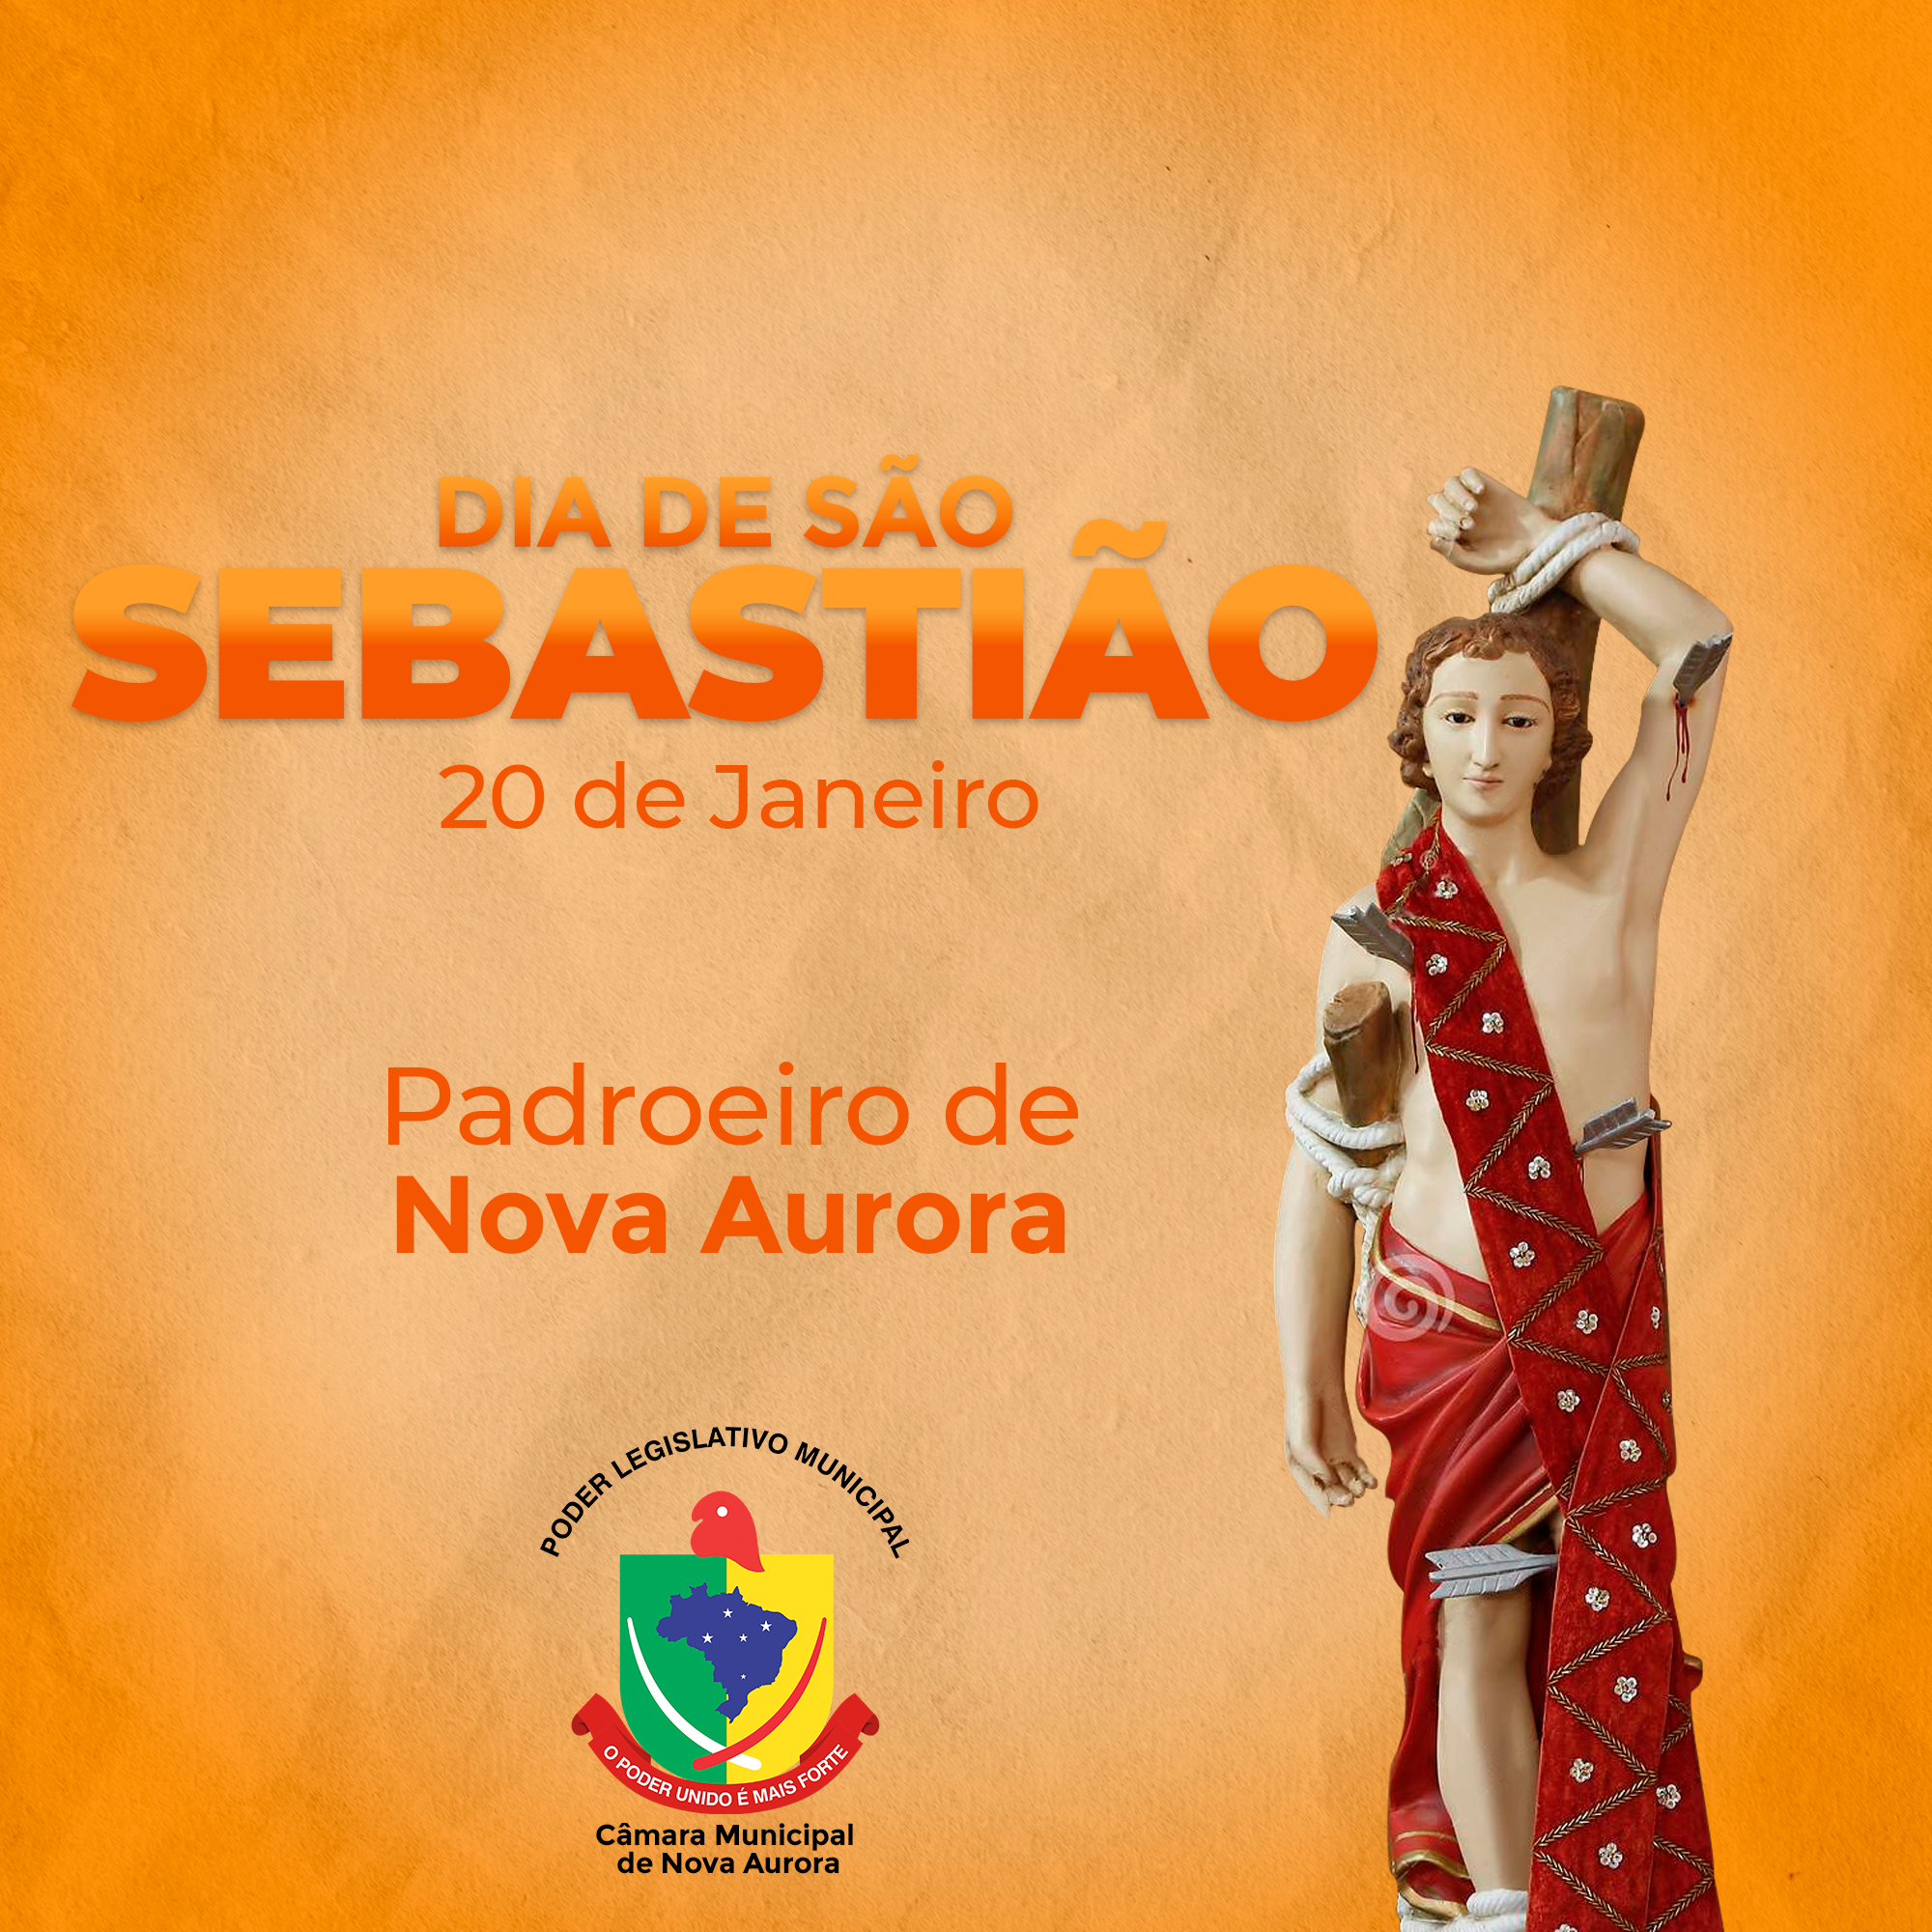 You are currently viewing 20 de Janeiro DIA DE SÃO SEBASTIÃO – PADROEIRO DE NOSSA CIDADE NOVA AURORA